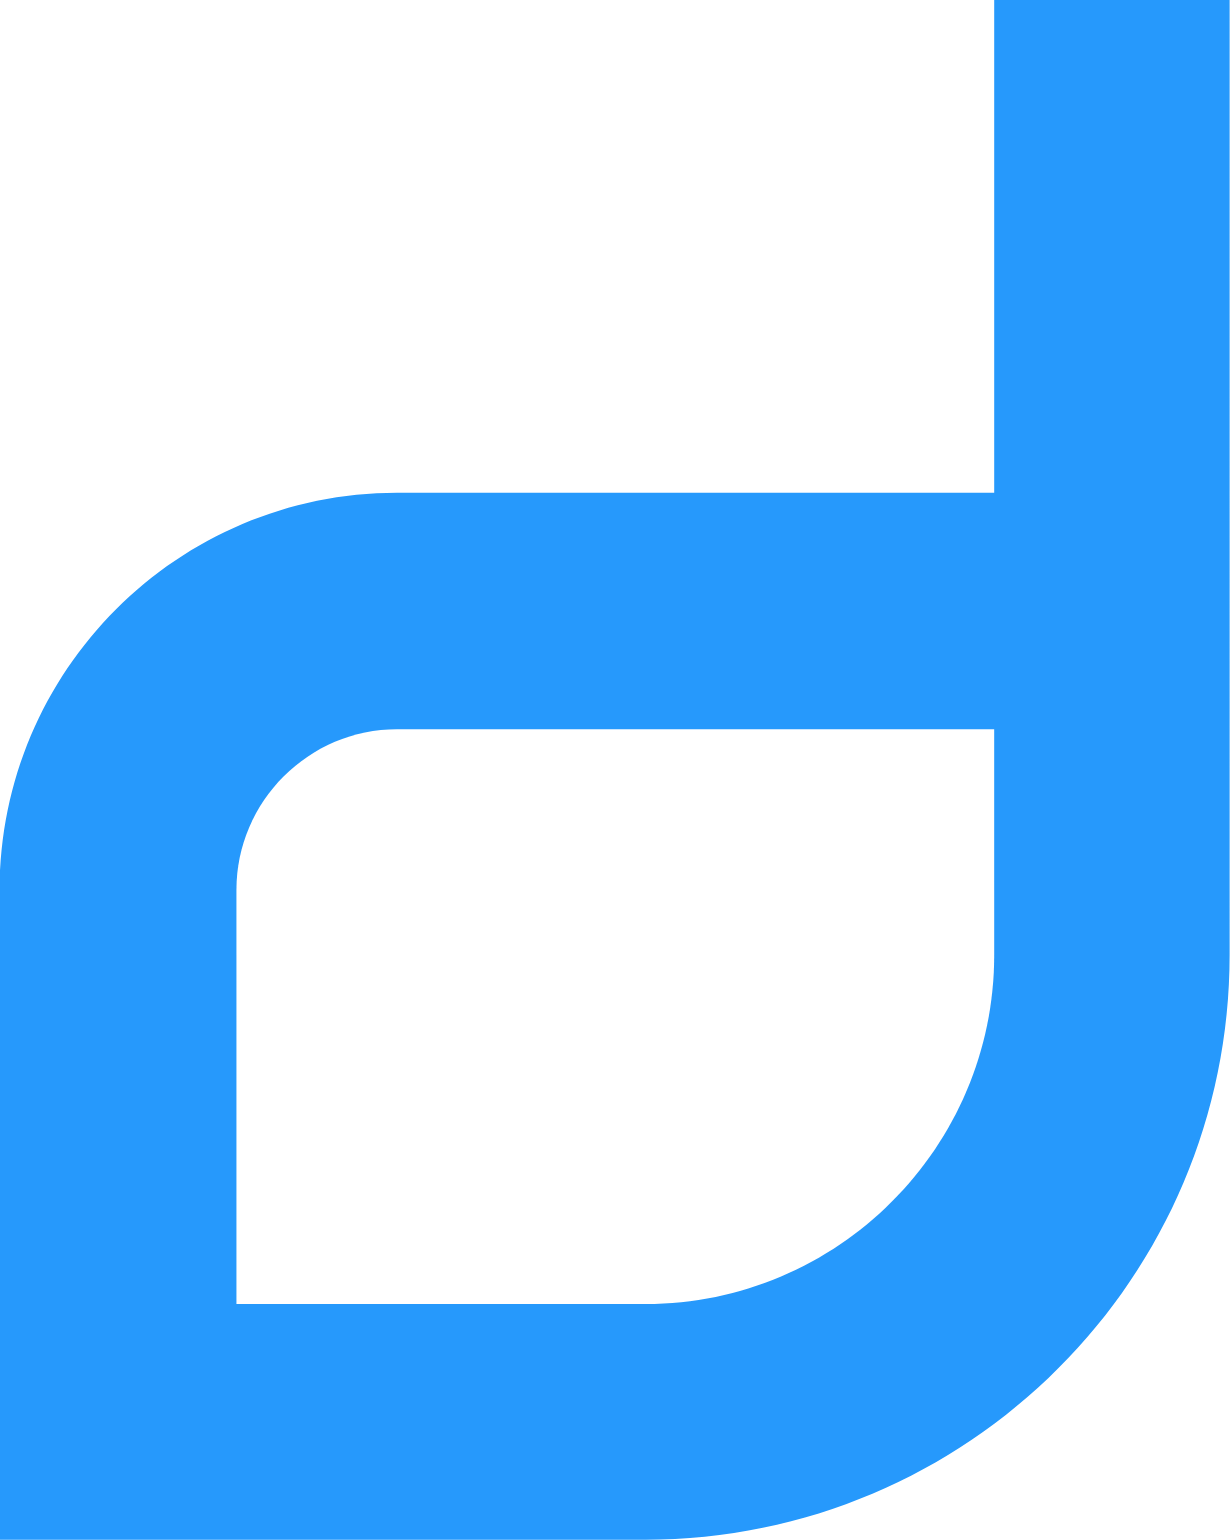 Draganfly logo (transparent PNG)